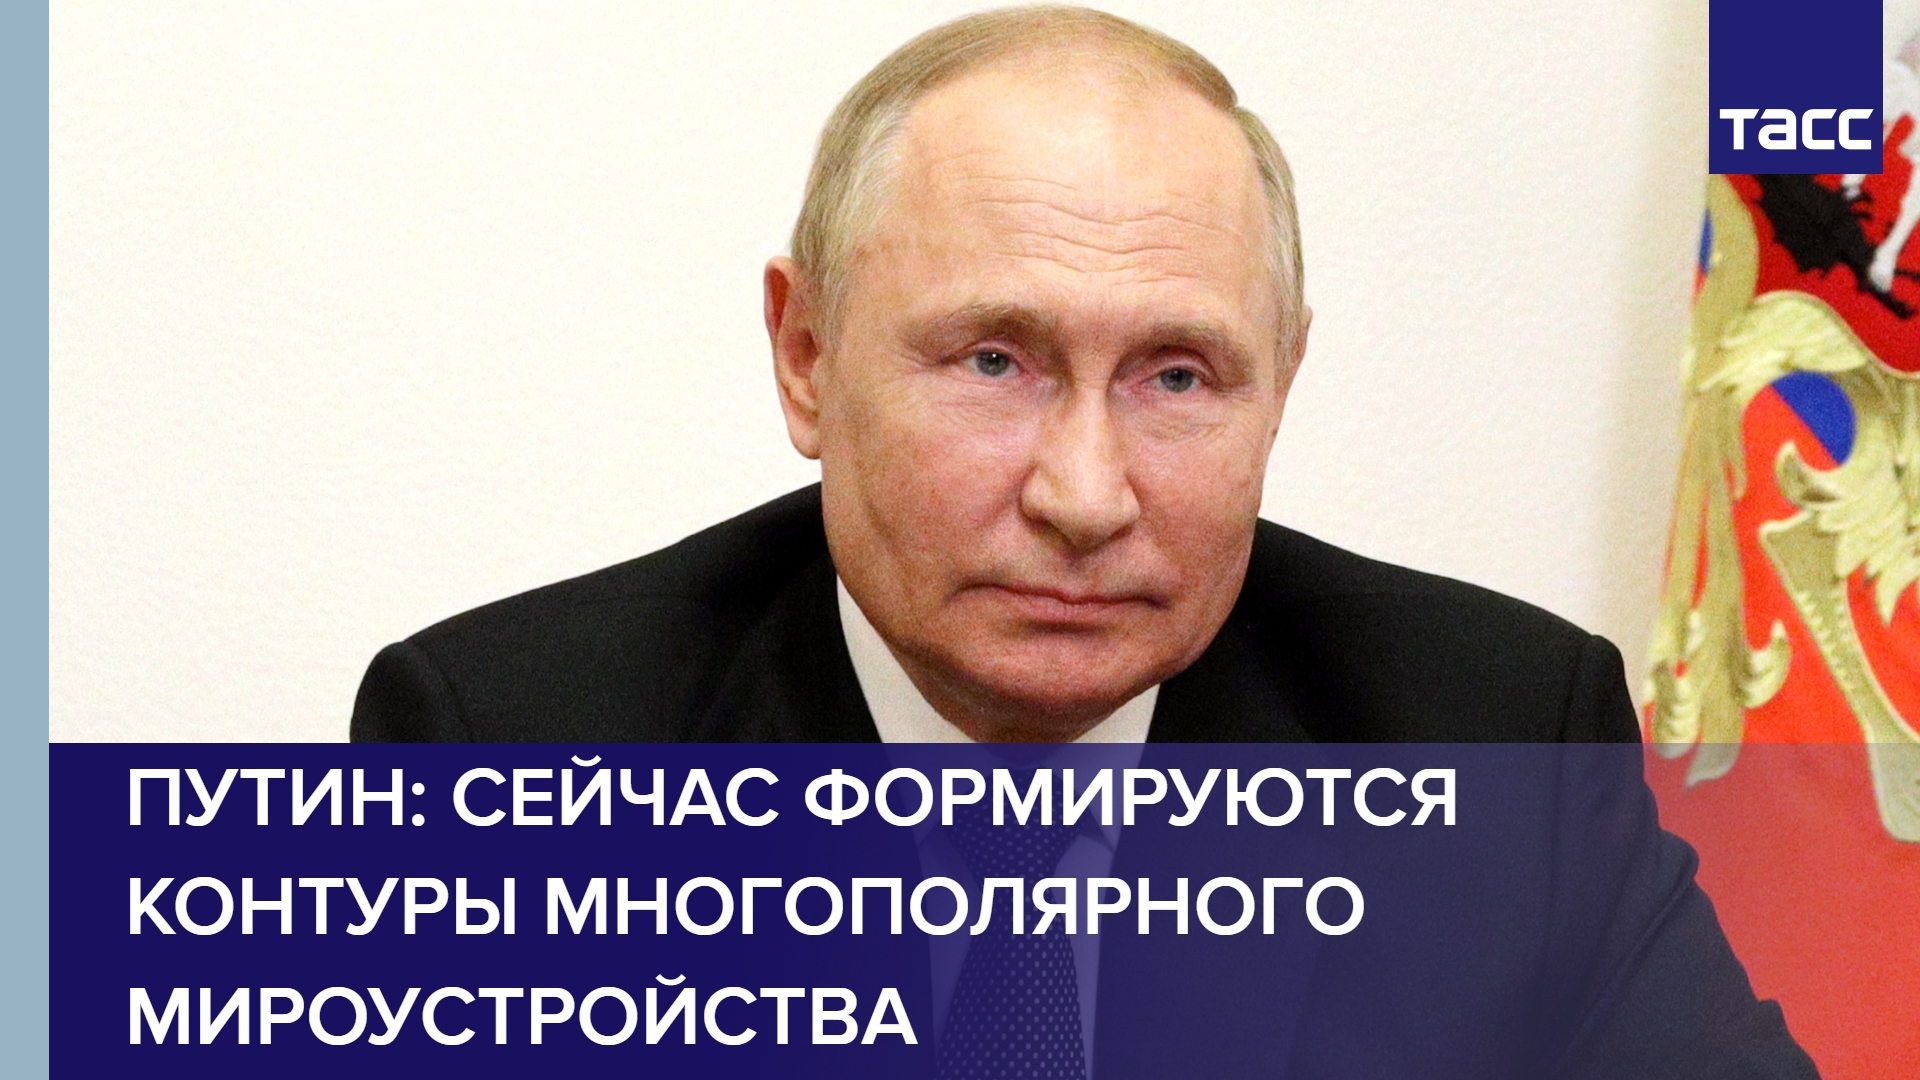 Путин: сейчас формируются контуры многополярного мироустройства